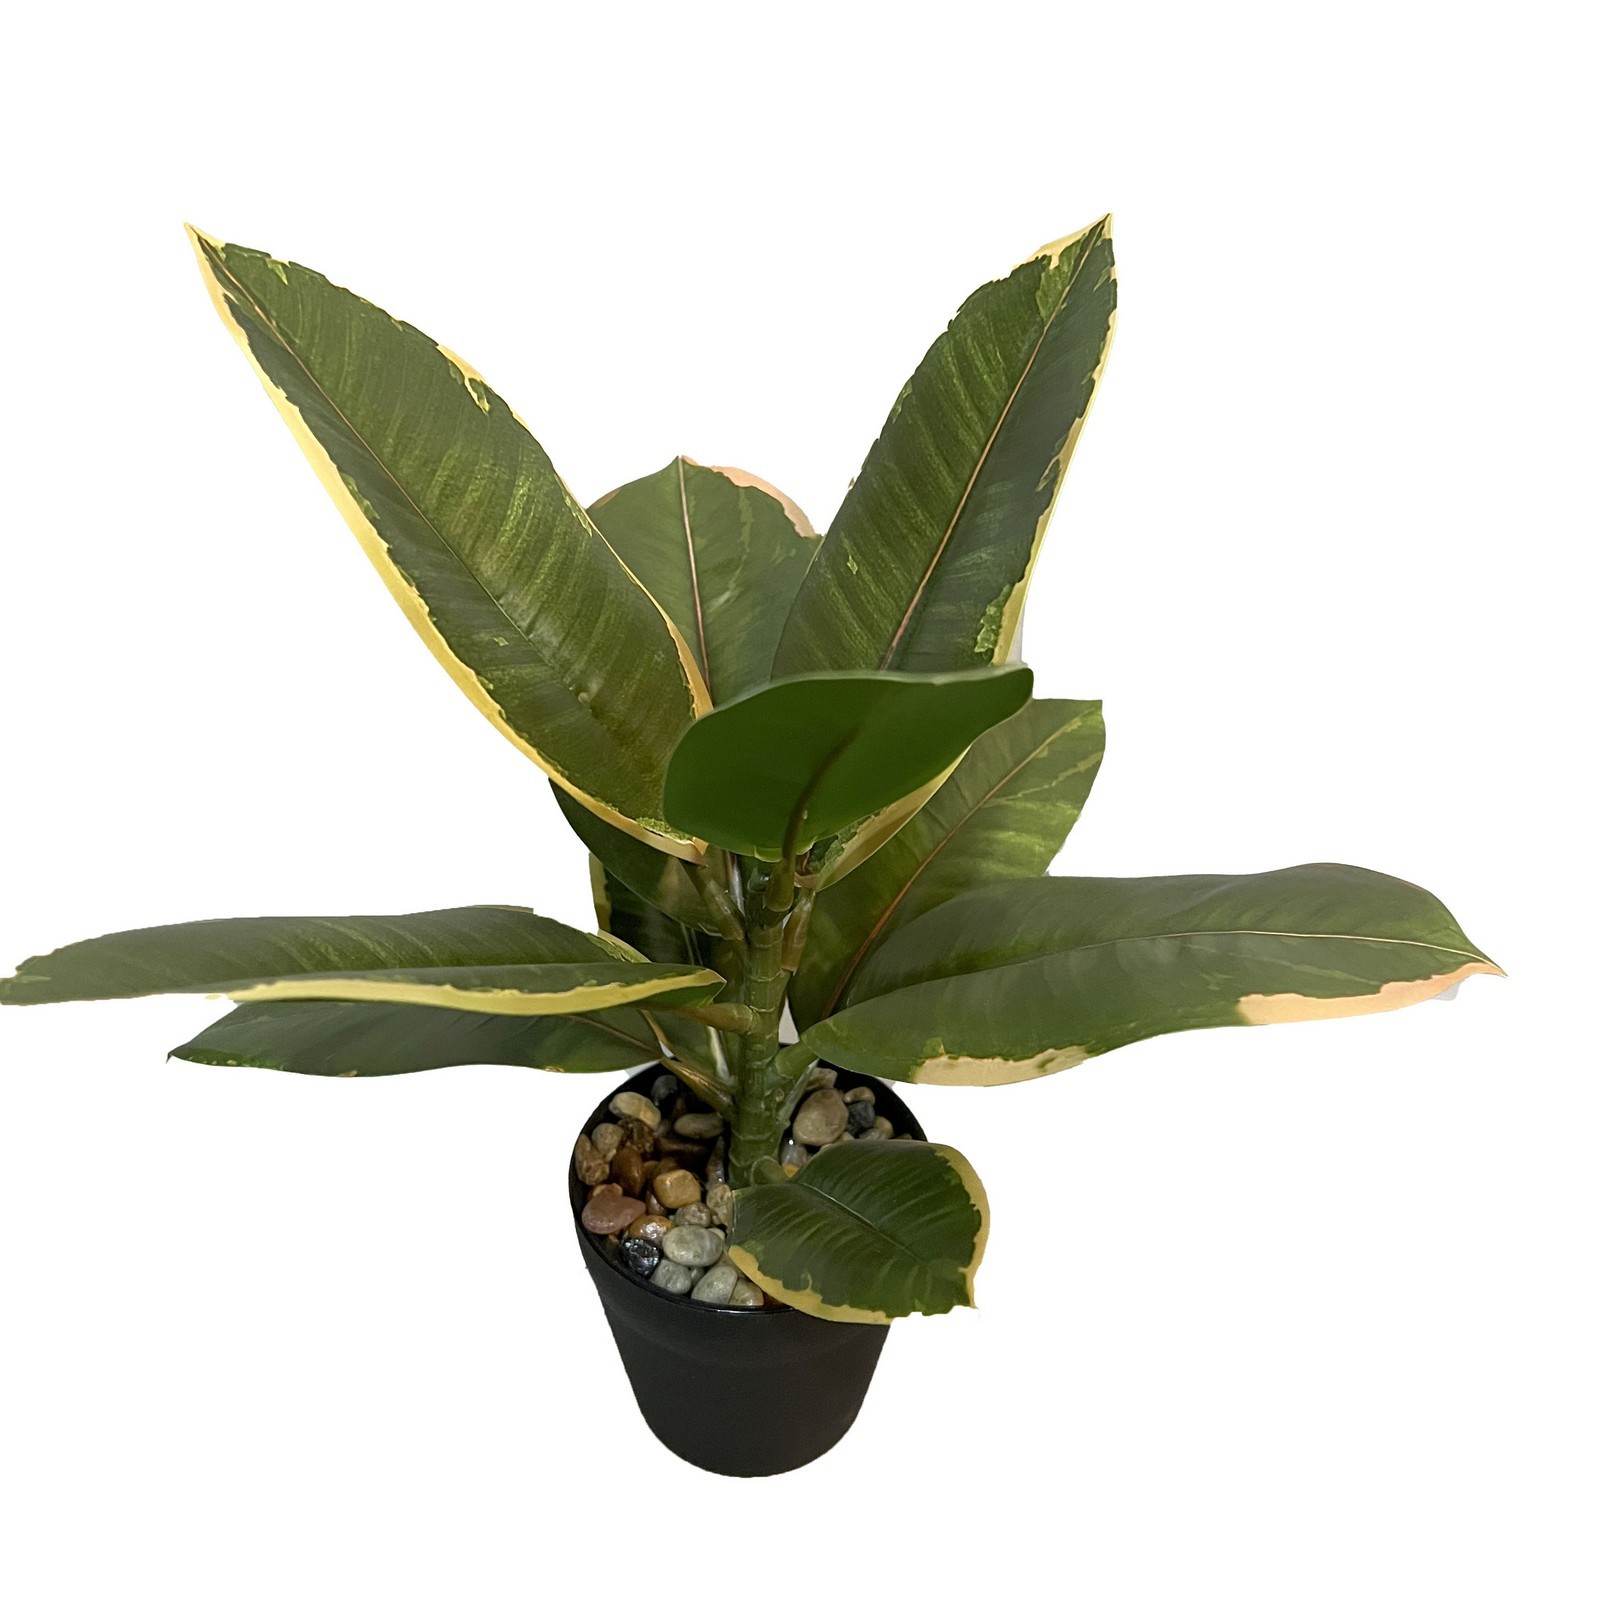 30cm Ficus elastica rubber plant in pot